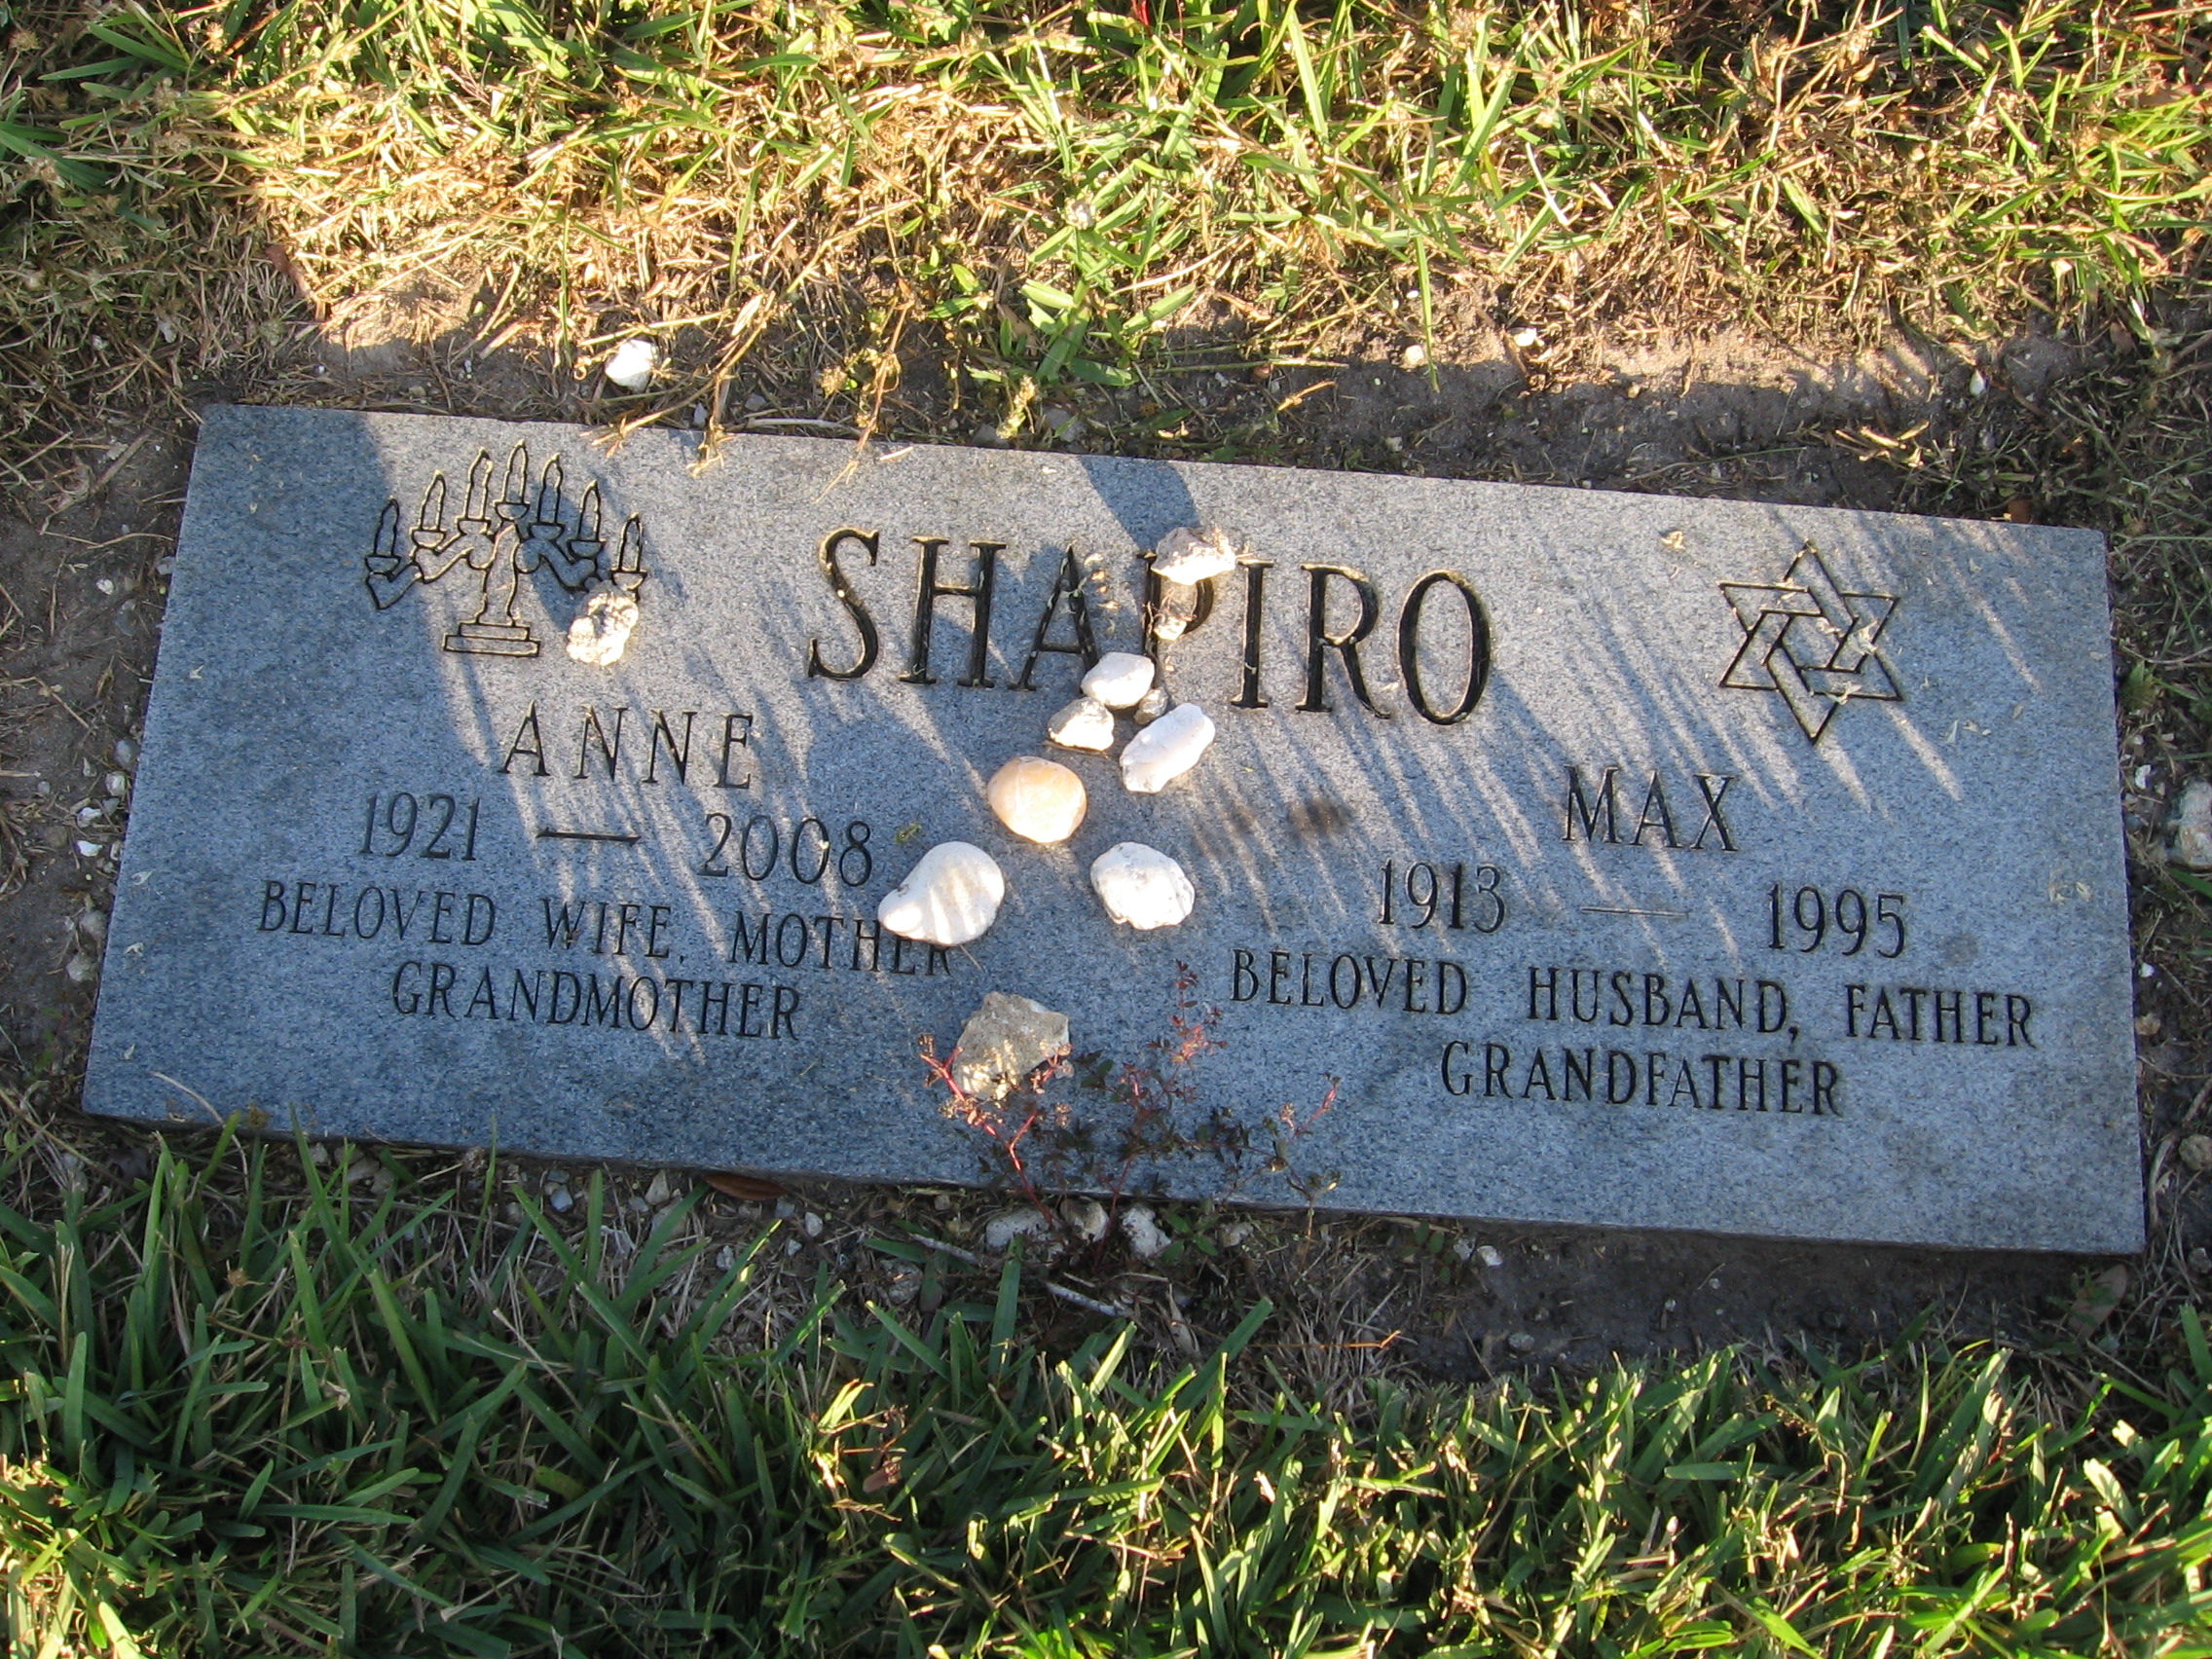 Max Shapiro